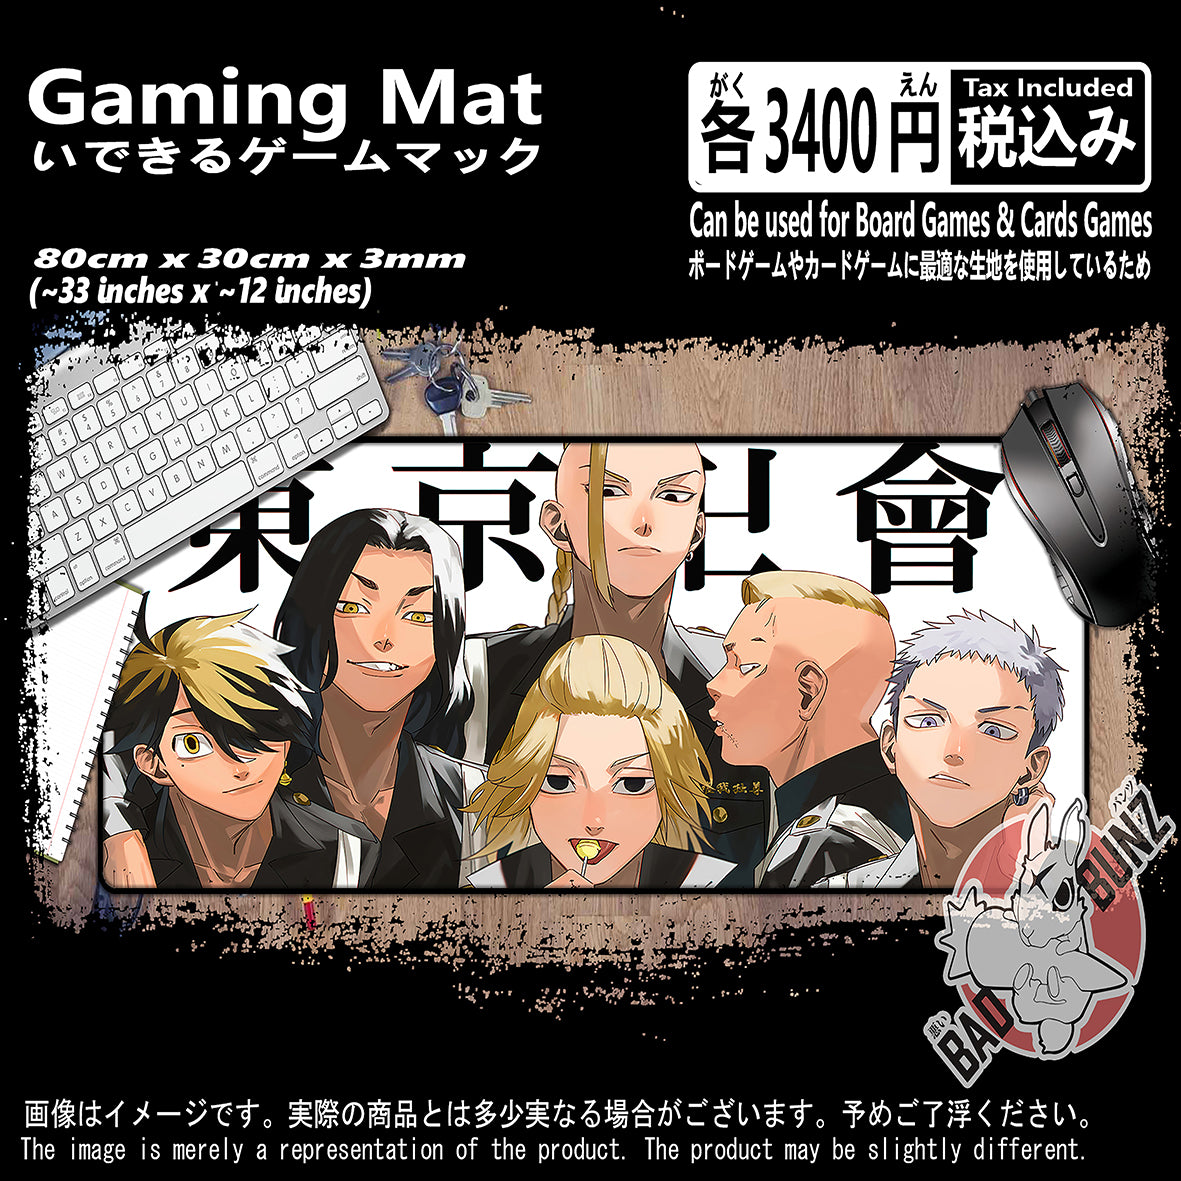 (AN-TKR-02) Tokyo Revenger Anime 800mm x 300mm Gaming Play Mat